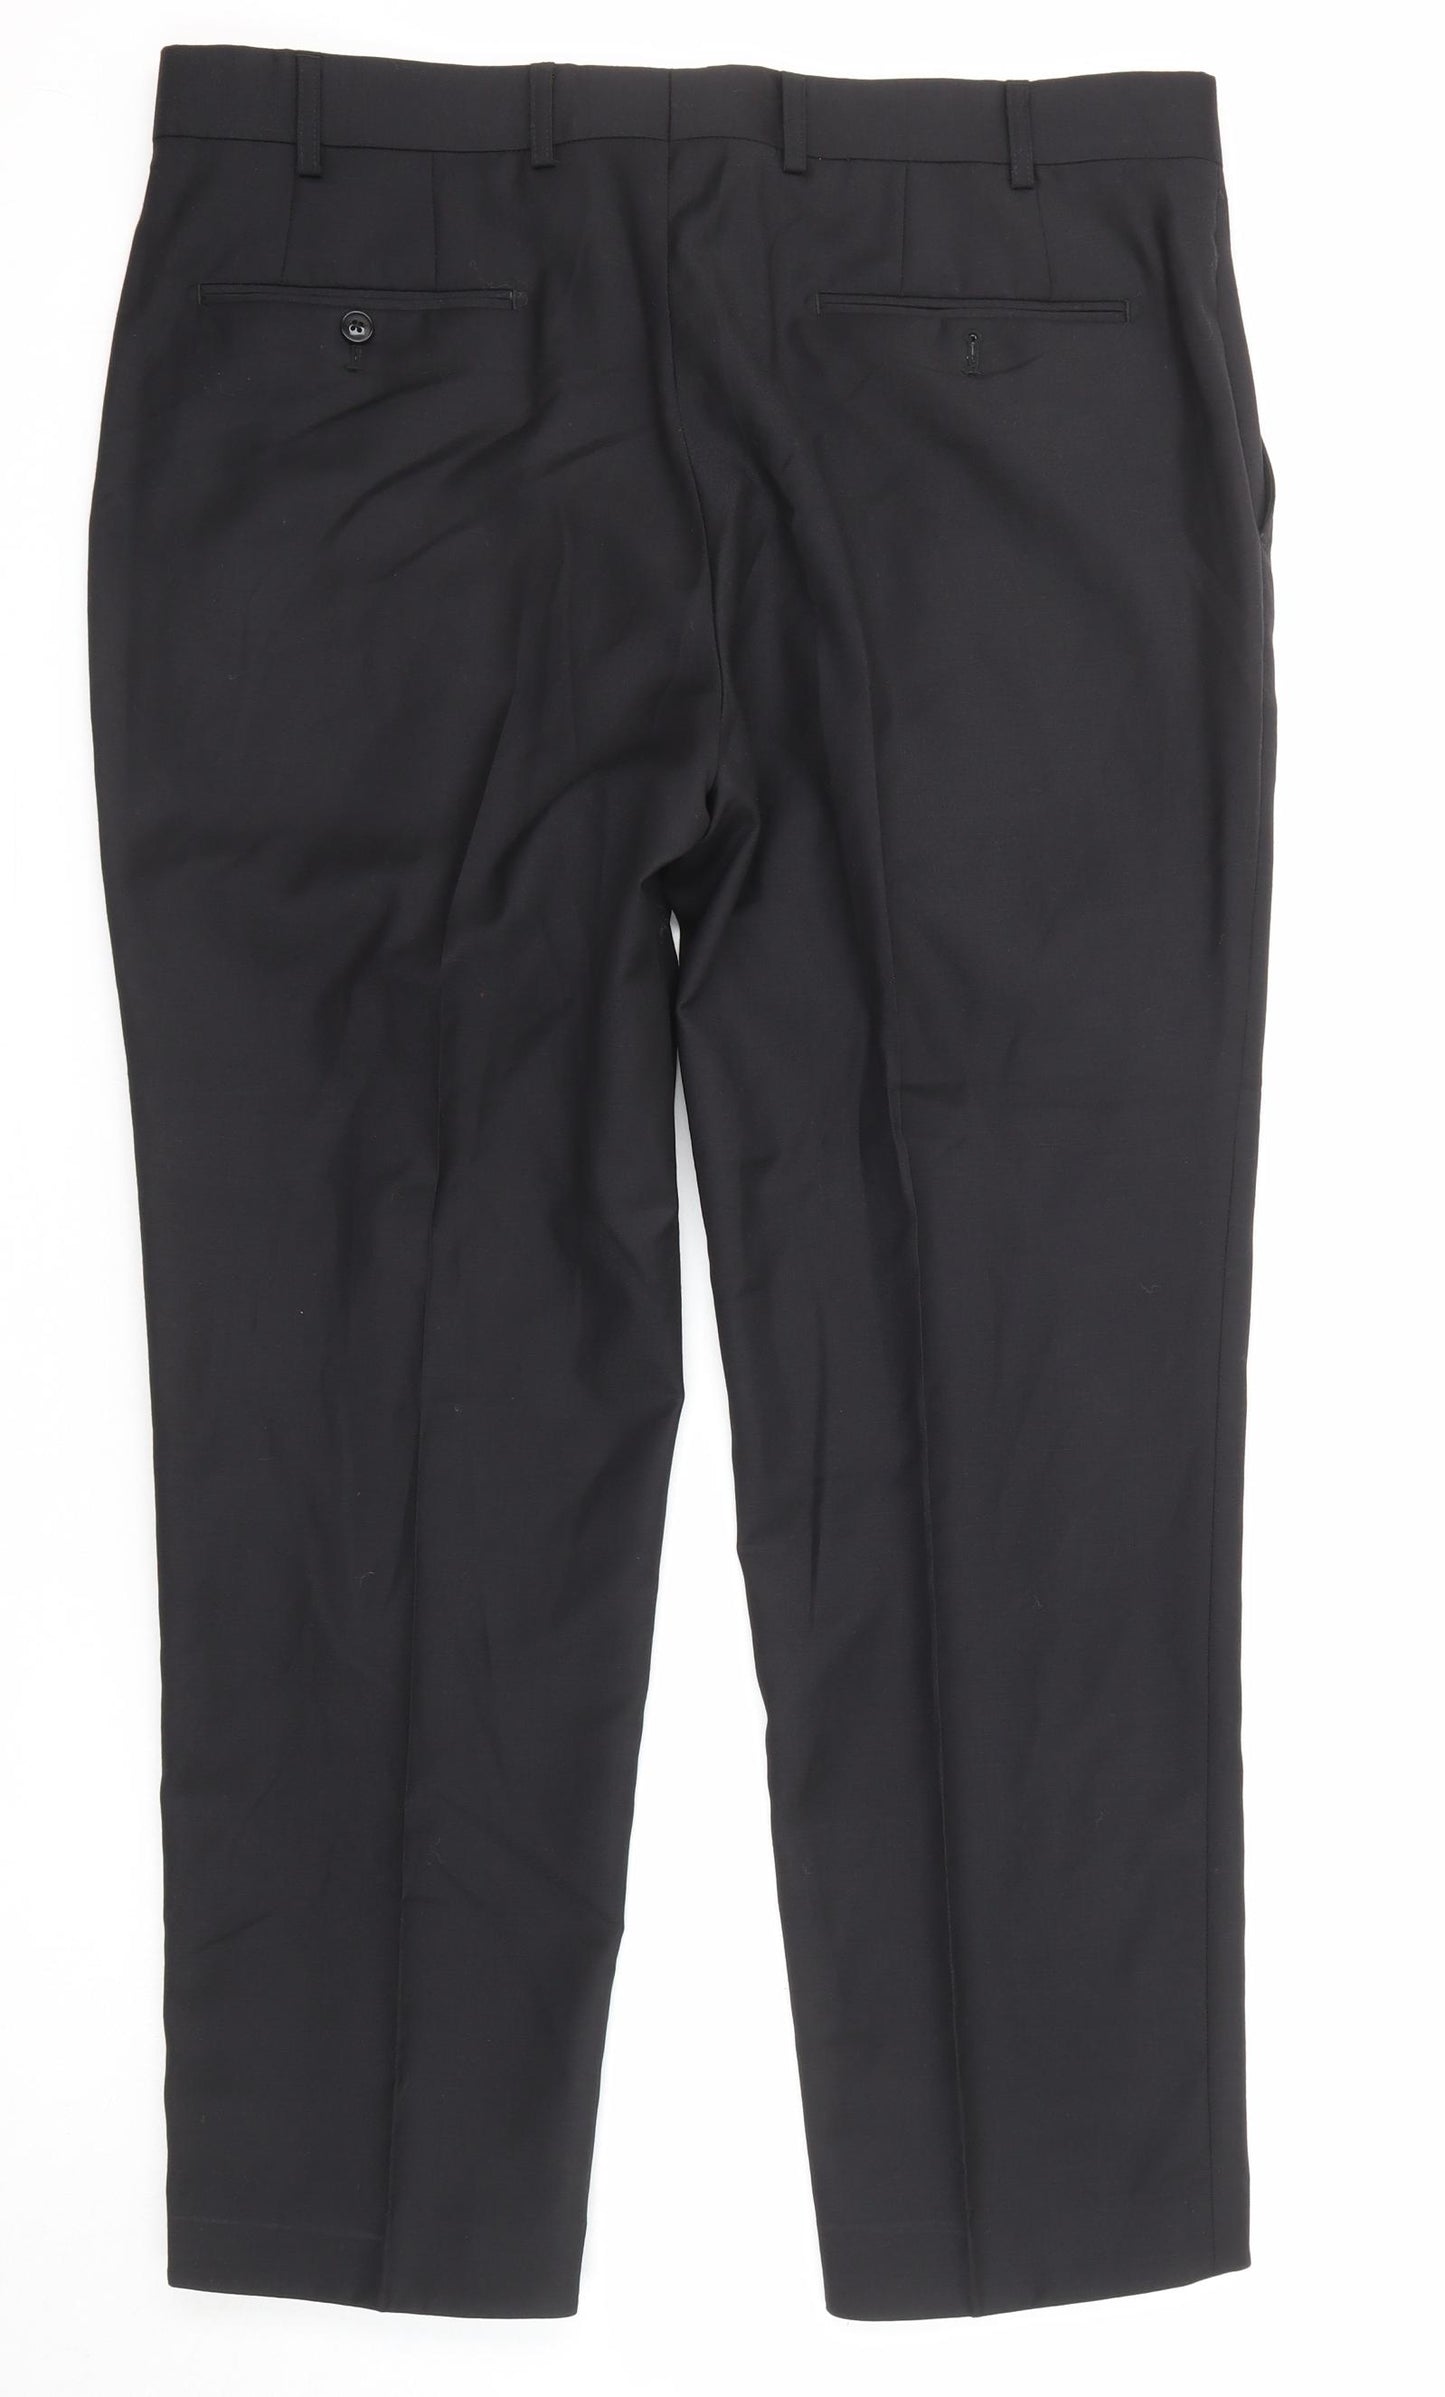 Samuel Slater Mens Black Polyester Dress Pants Trousers Size 36 in Regular Zip